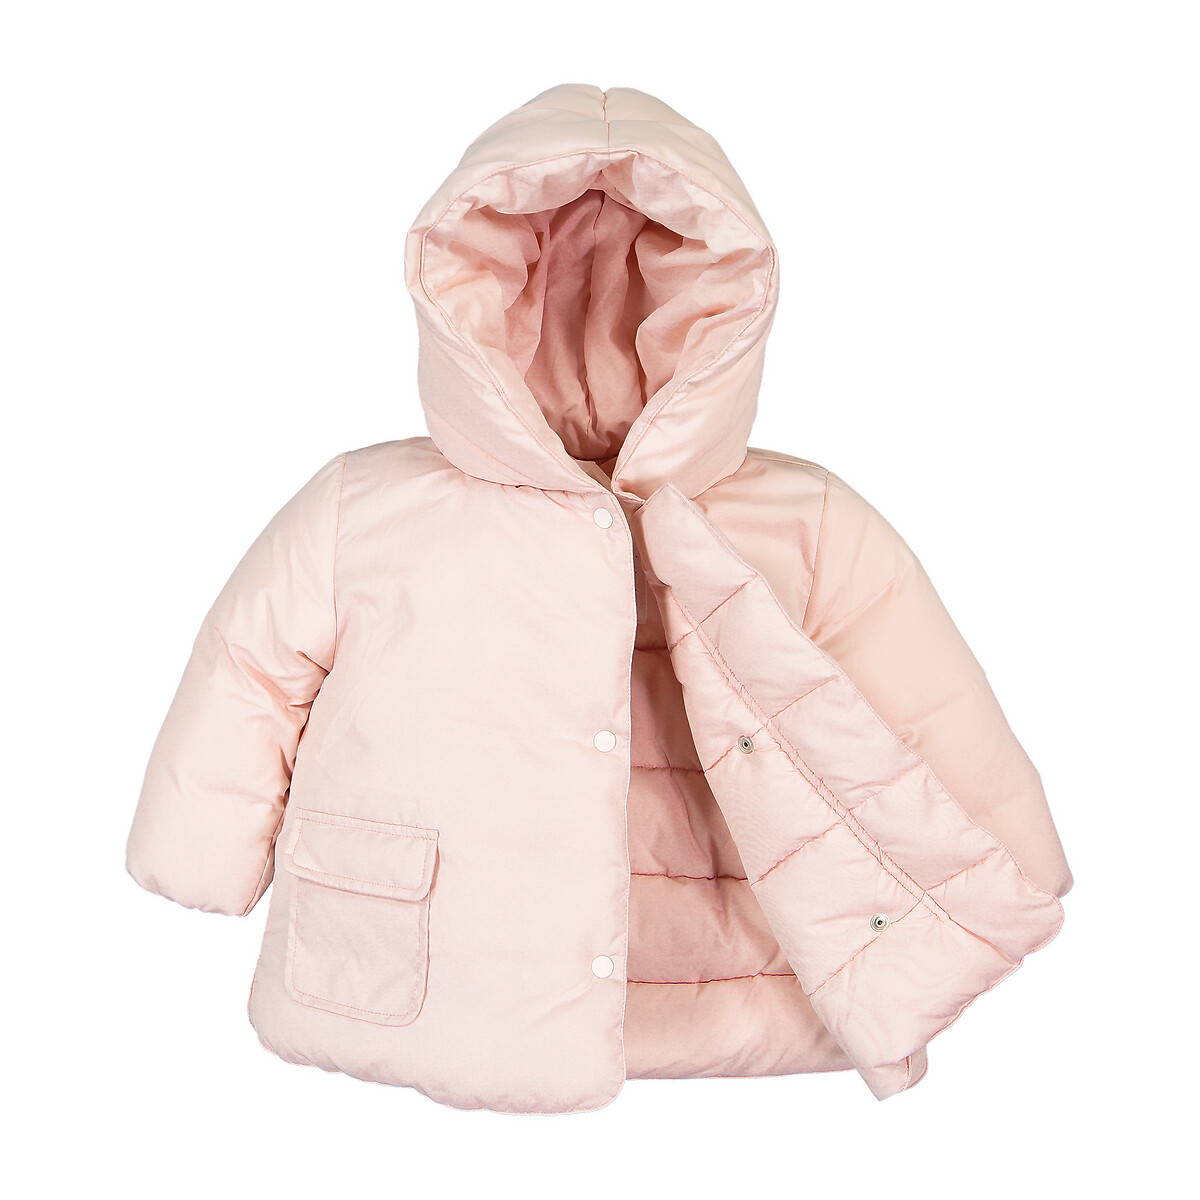 Куртка La Redoute Стеганая утепленная с капюшоном 3 мес-4 года 4 года - 102 см розовый, размер 4 года - 102 см - фото 3